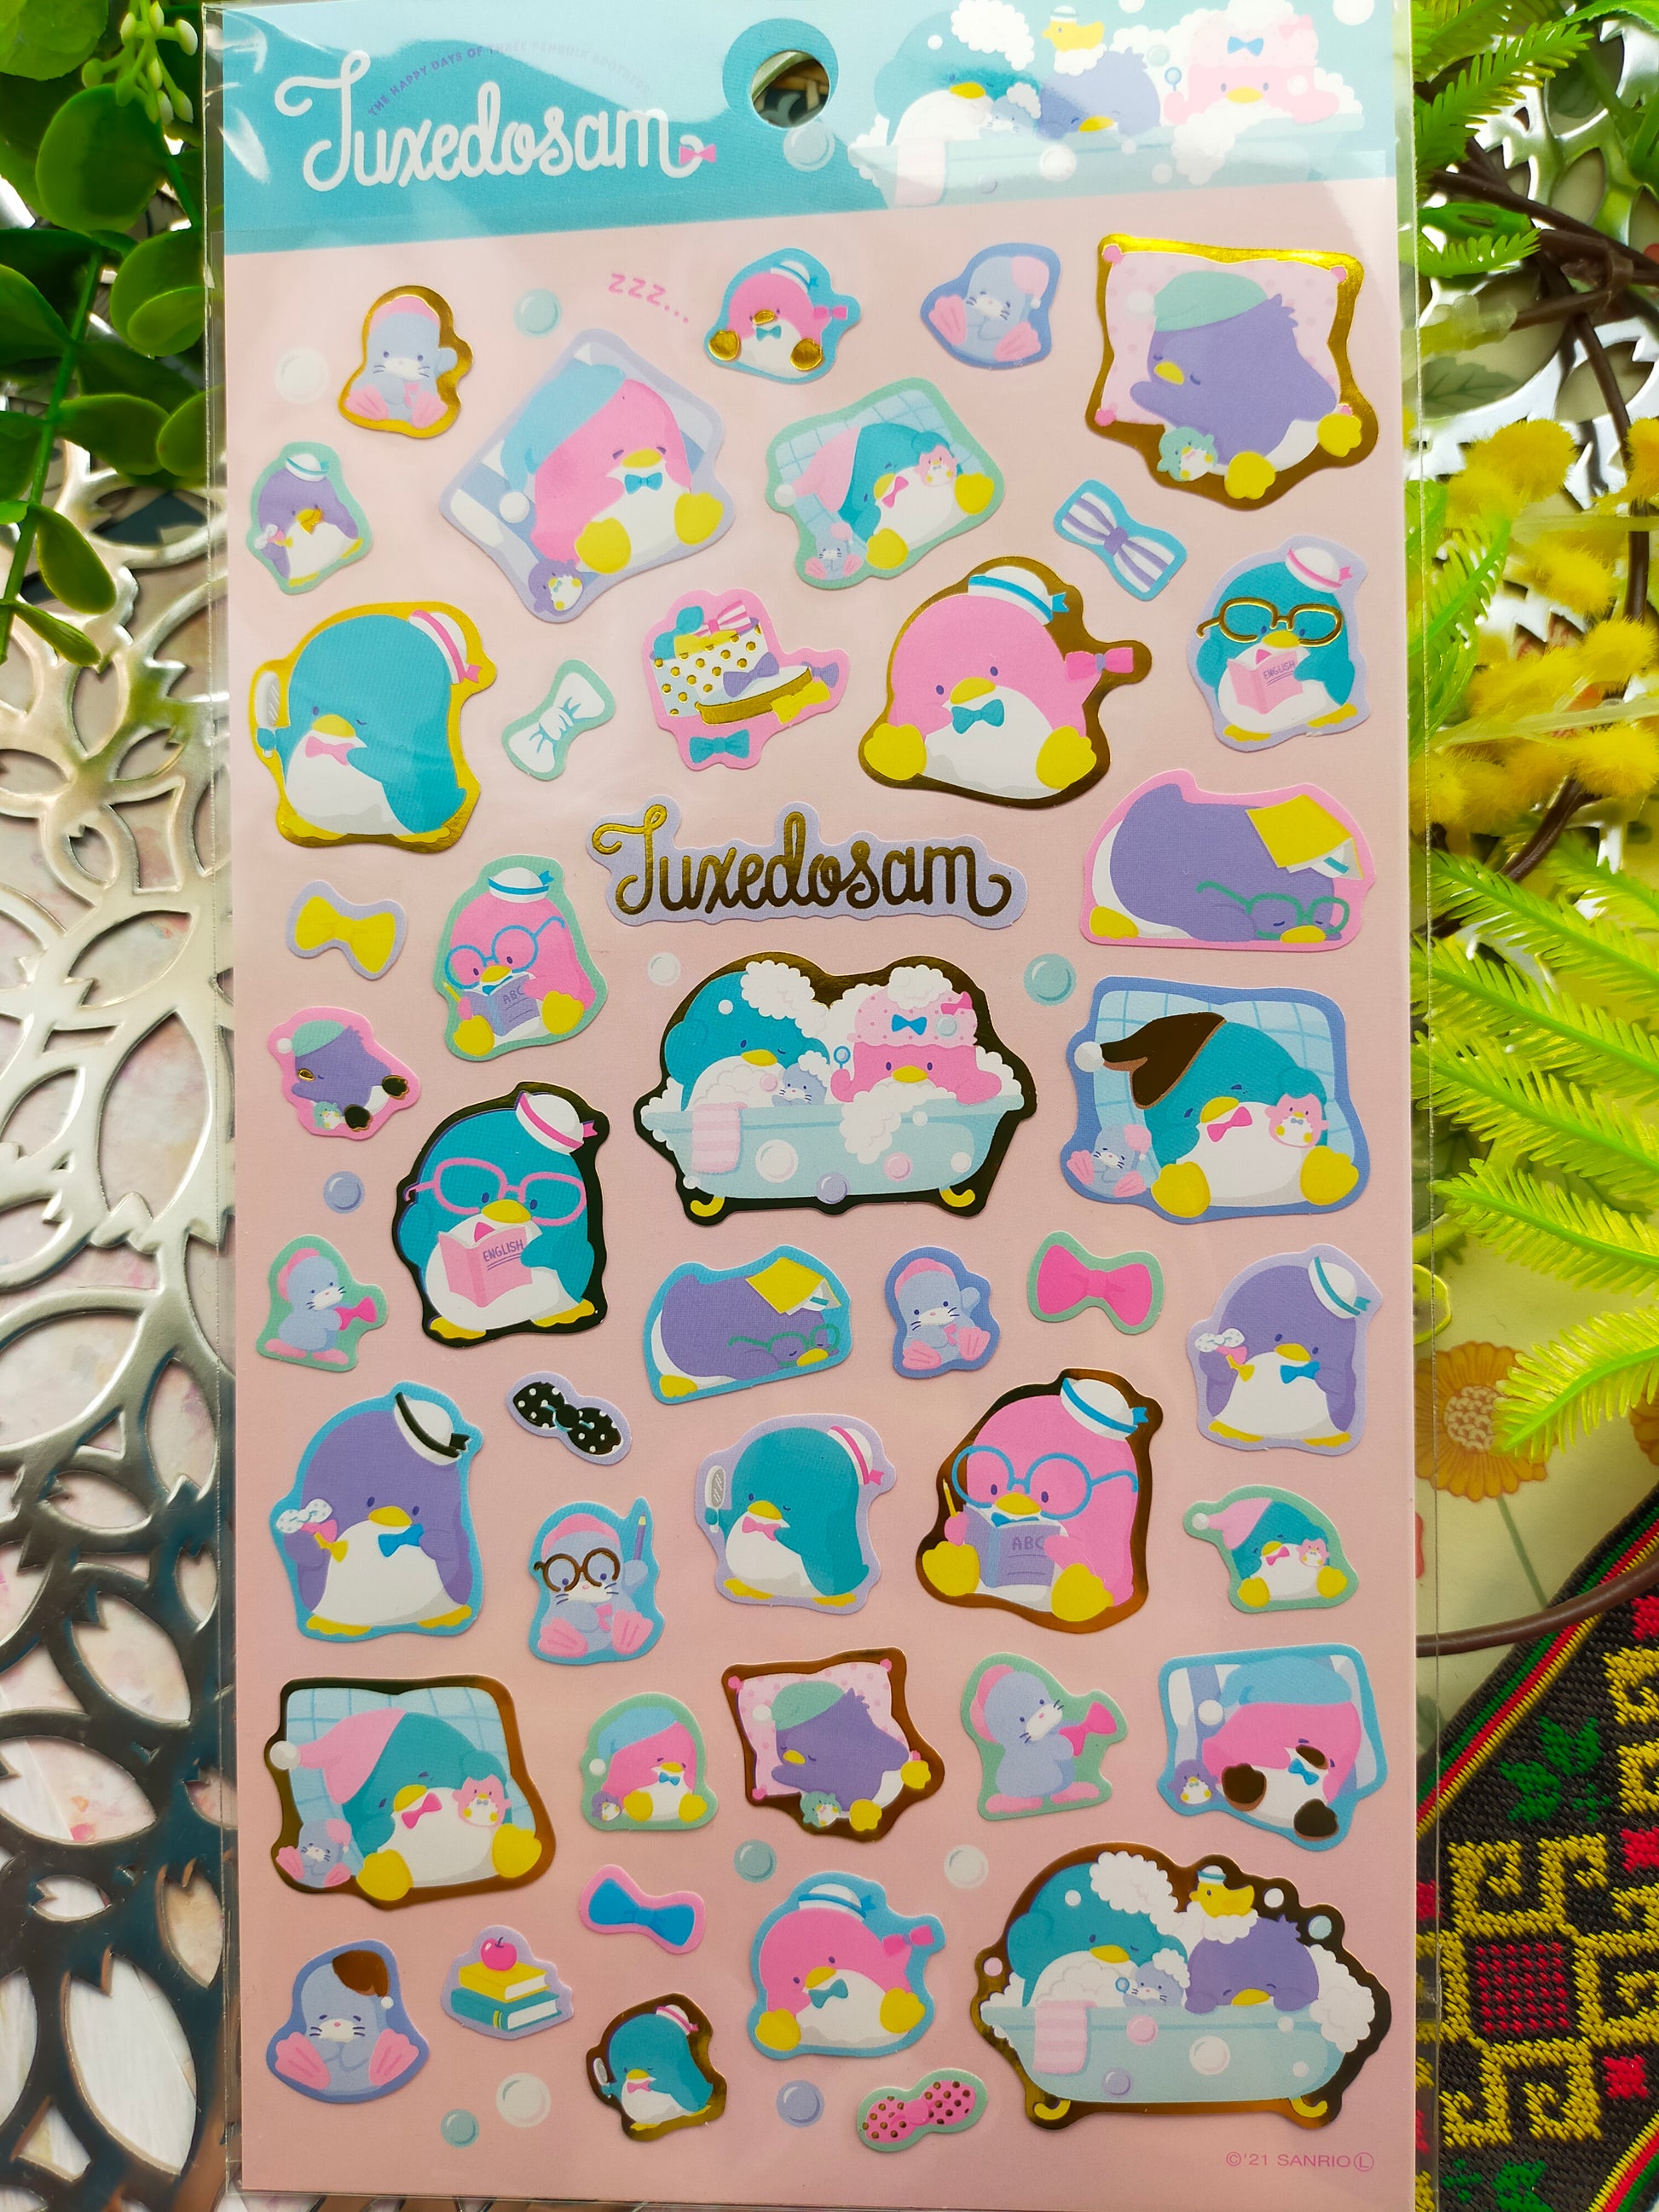 Sanrio characters Big sticker 2022 _ Hello Kitty / Kuromi /Little Twin Stars/ Tuxedosam / Hangyodon /Kerokerokeroppi / Pompompurin